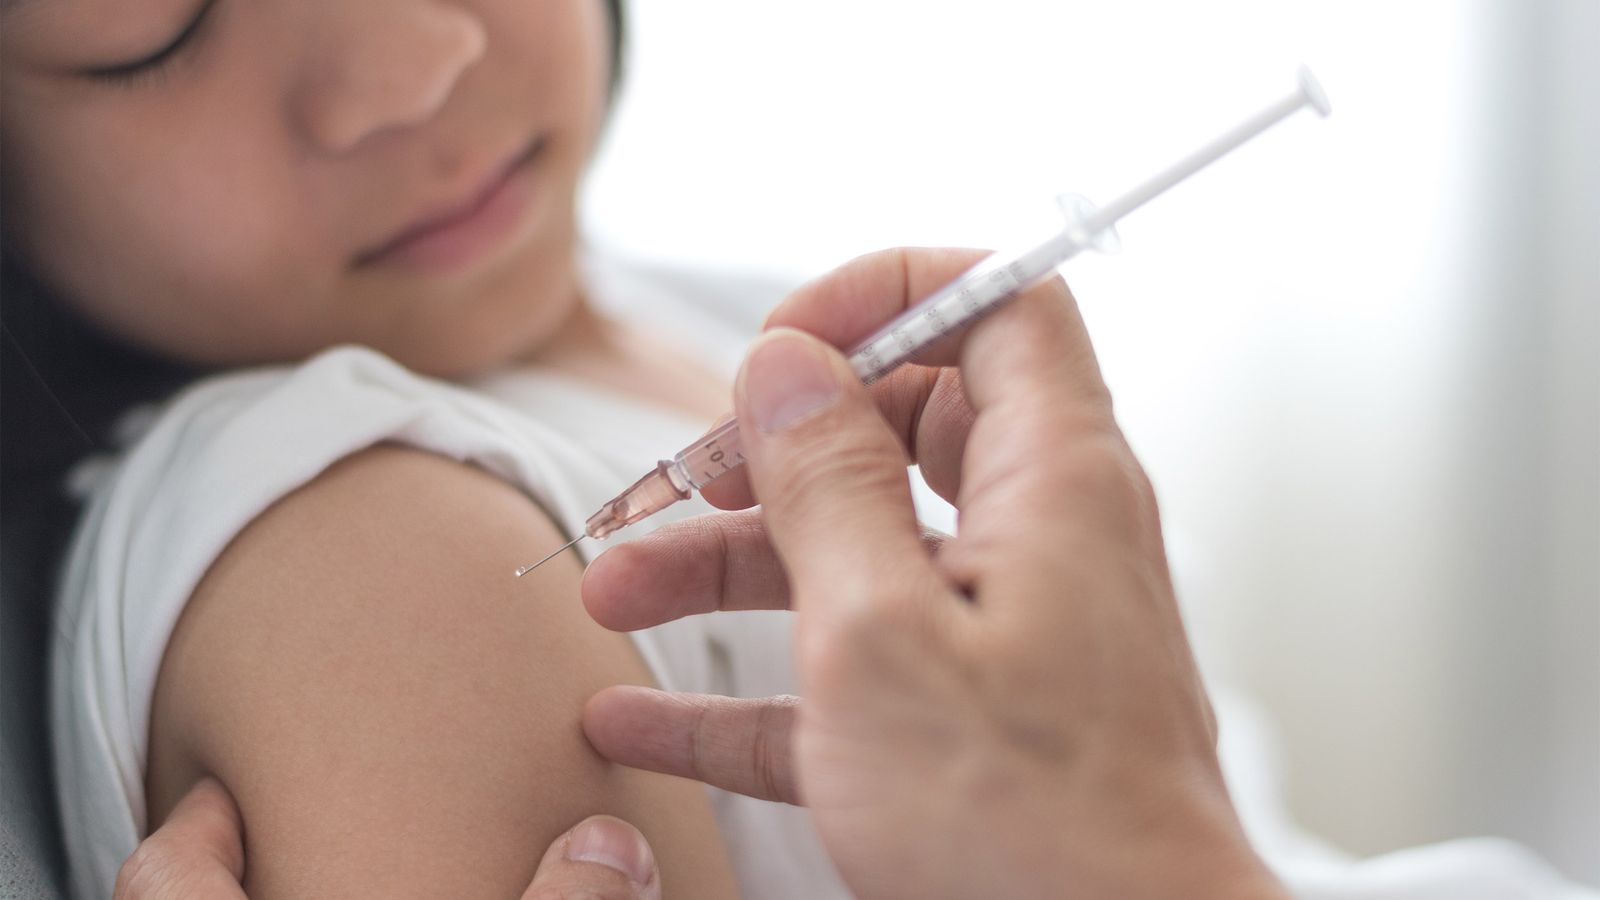 hpv impfung jungen unnotig